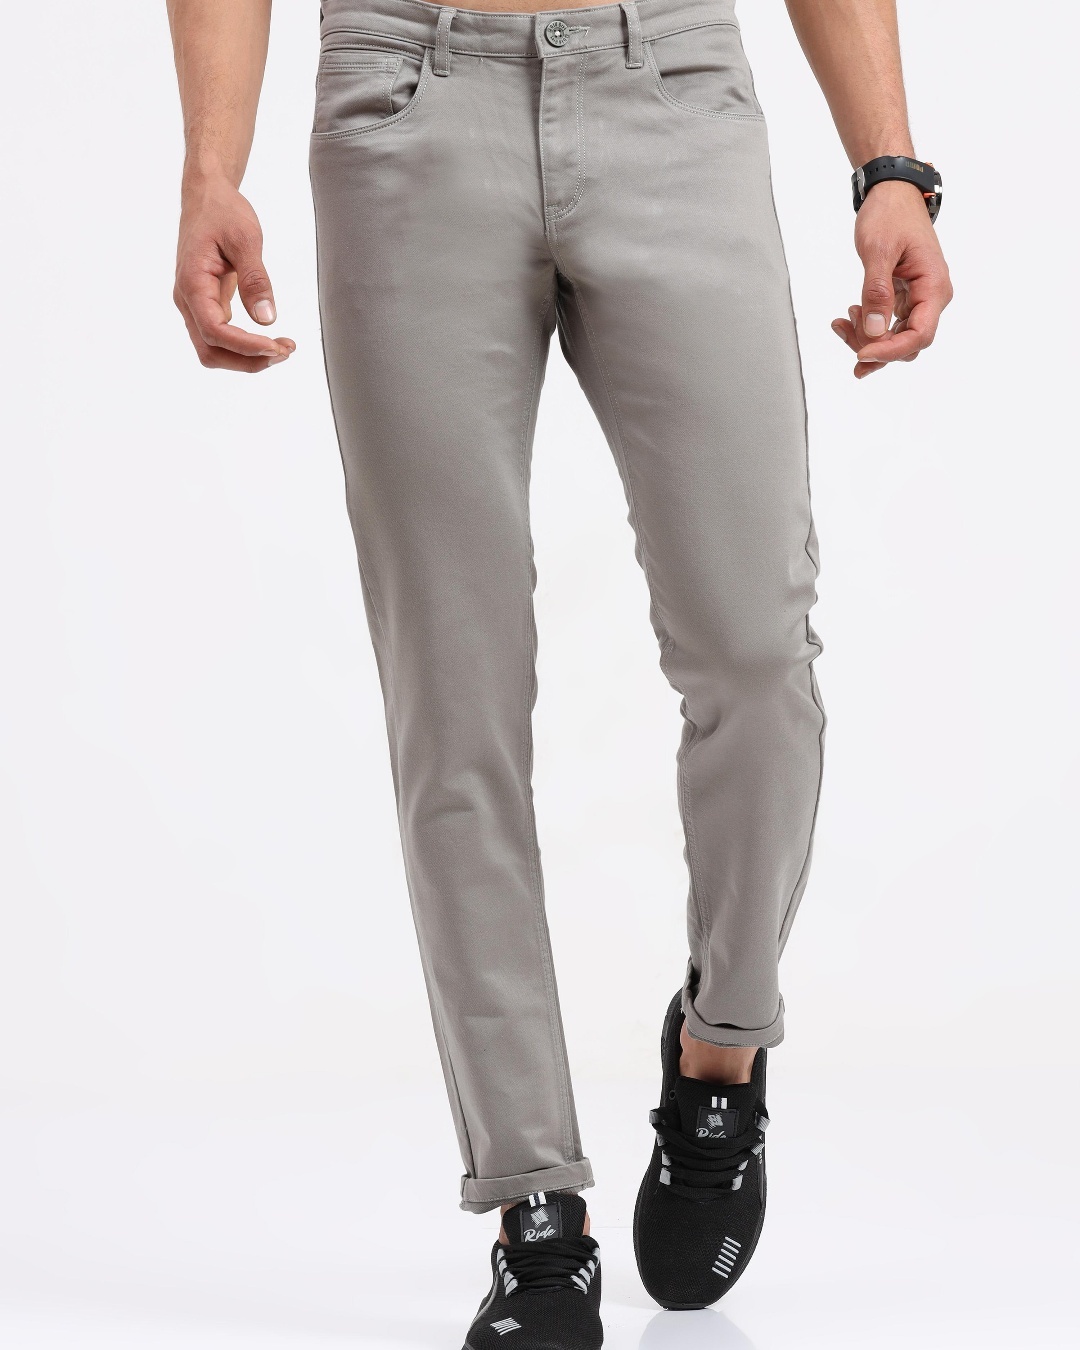 Buy Men's Grey Slim Fit Trousers for Men Grey Online at Bewakoof